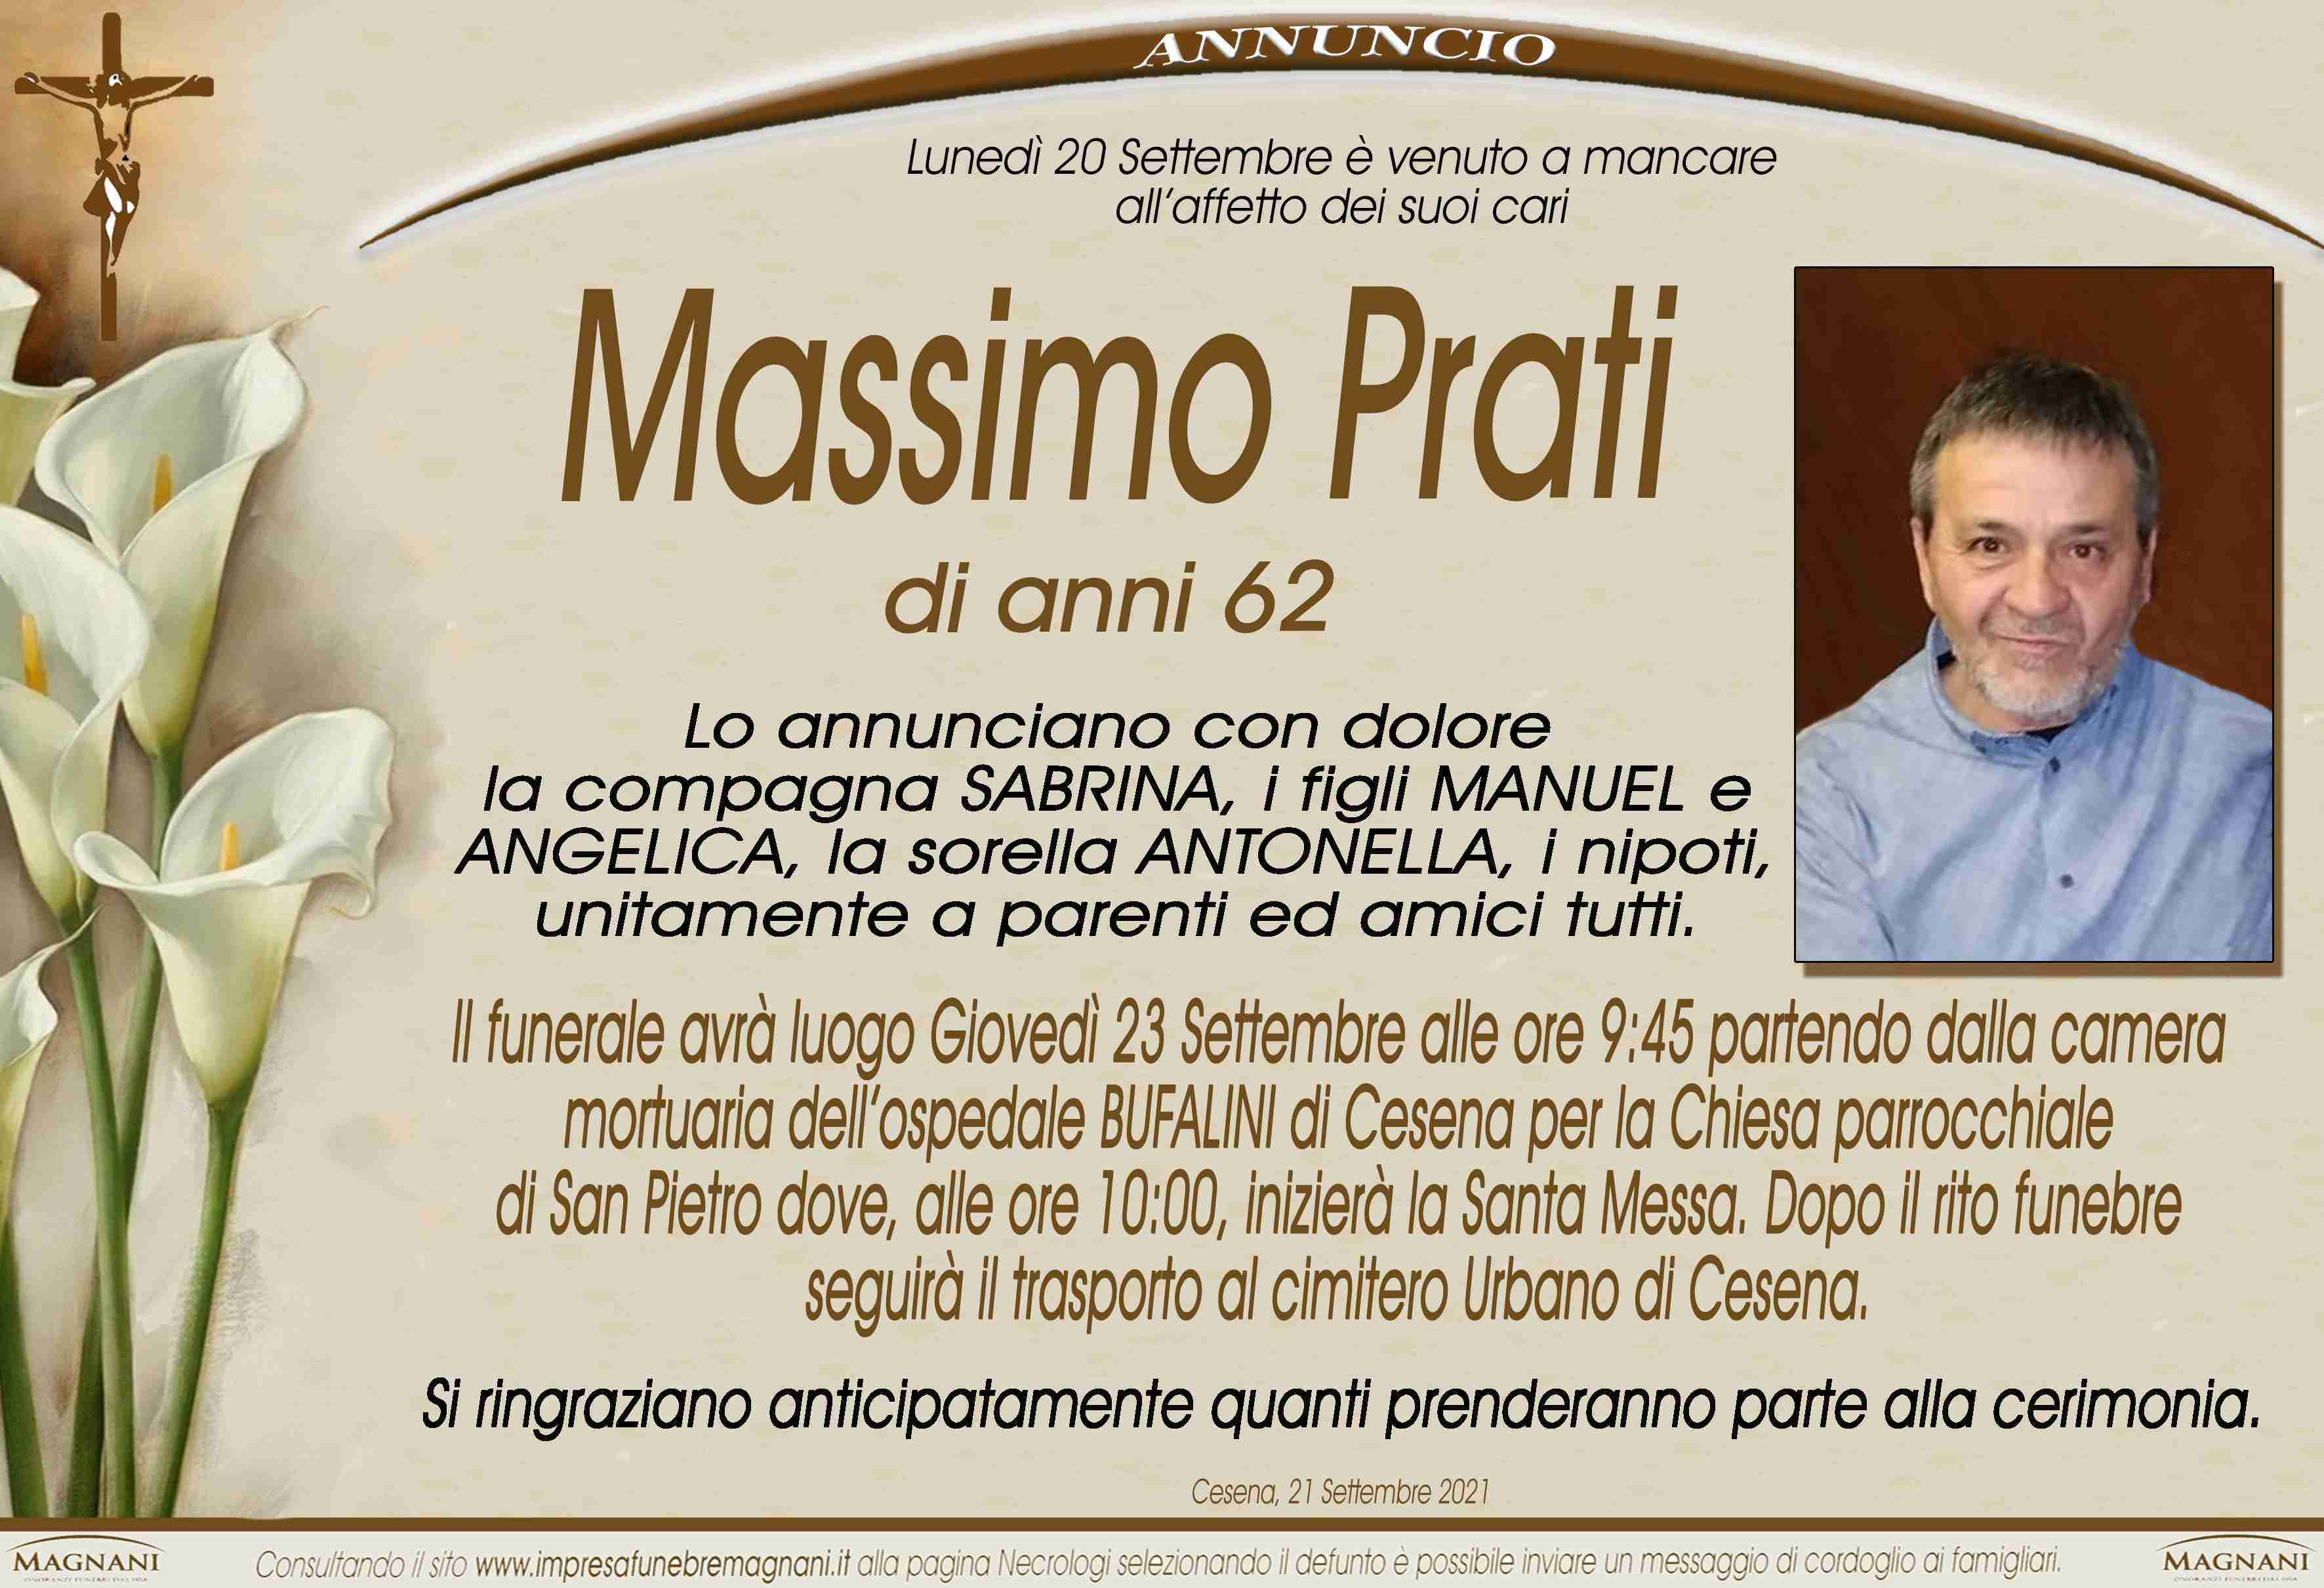 Massimo Prati